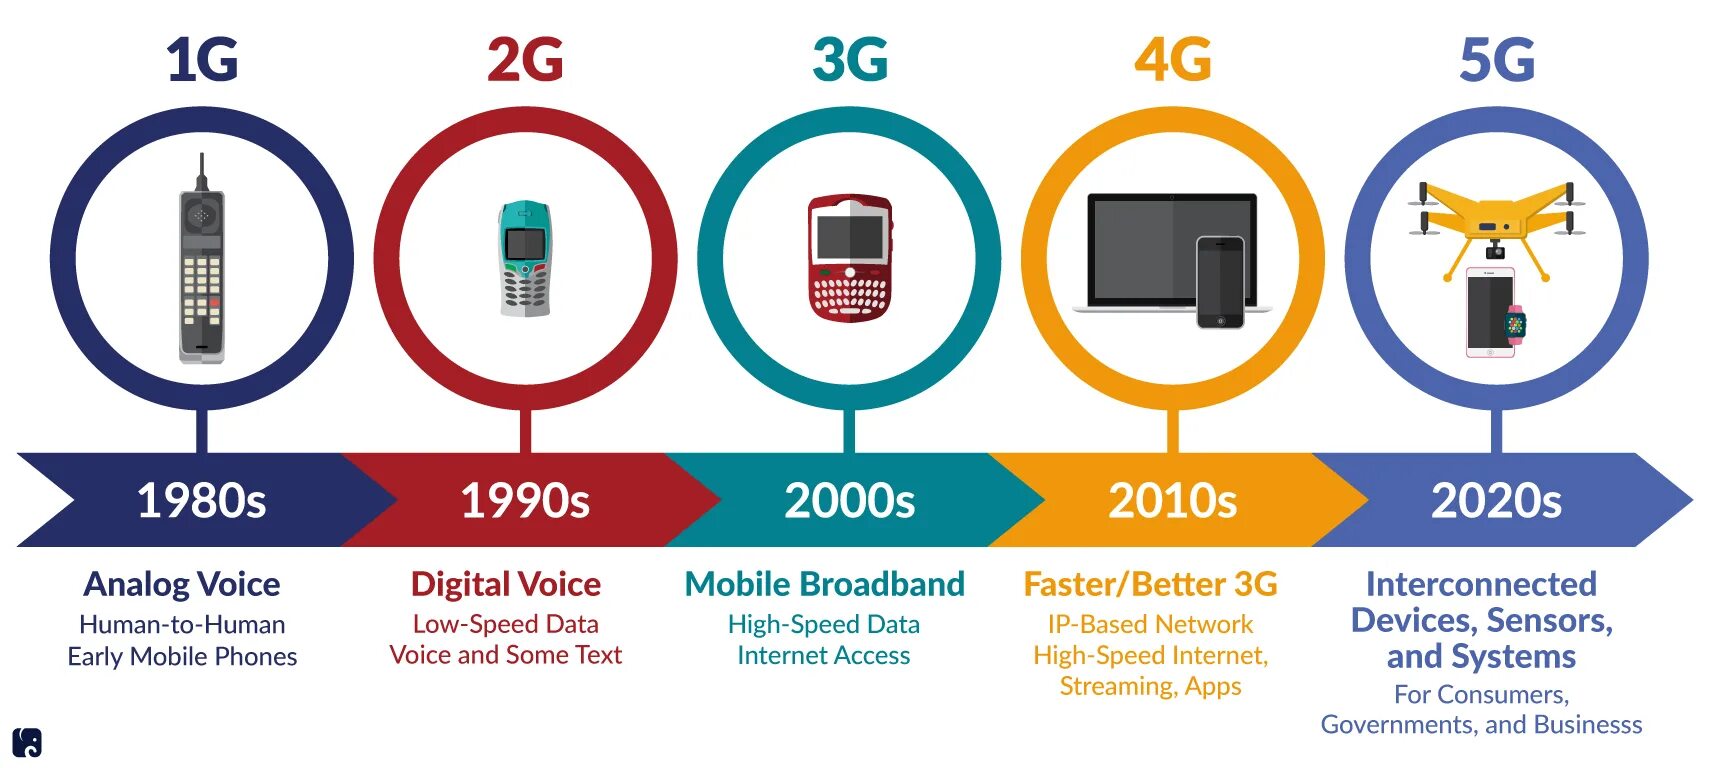 Технологии сотовой связи 2g 3g 4g. Поколения сотовой связи 2g 3g и 4g. 4g стандарты сотовой сети. Сотовая связь 1g 2g 3g 4g 5g.